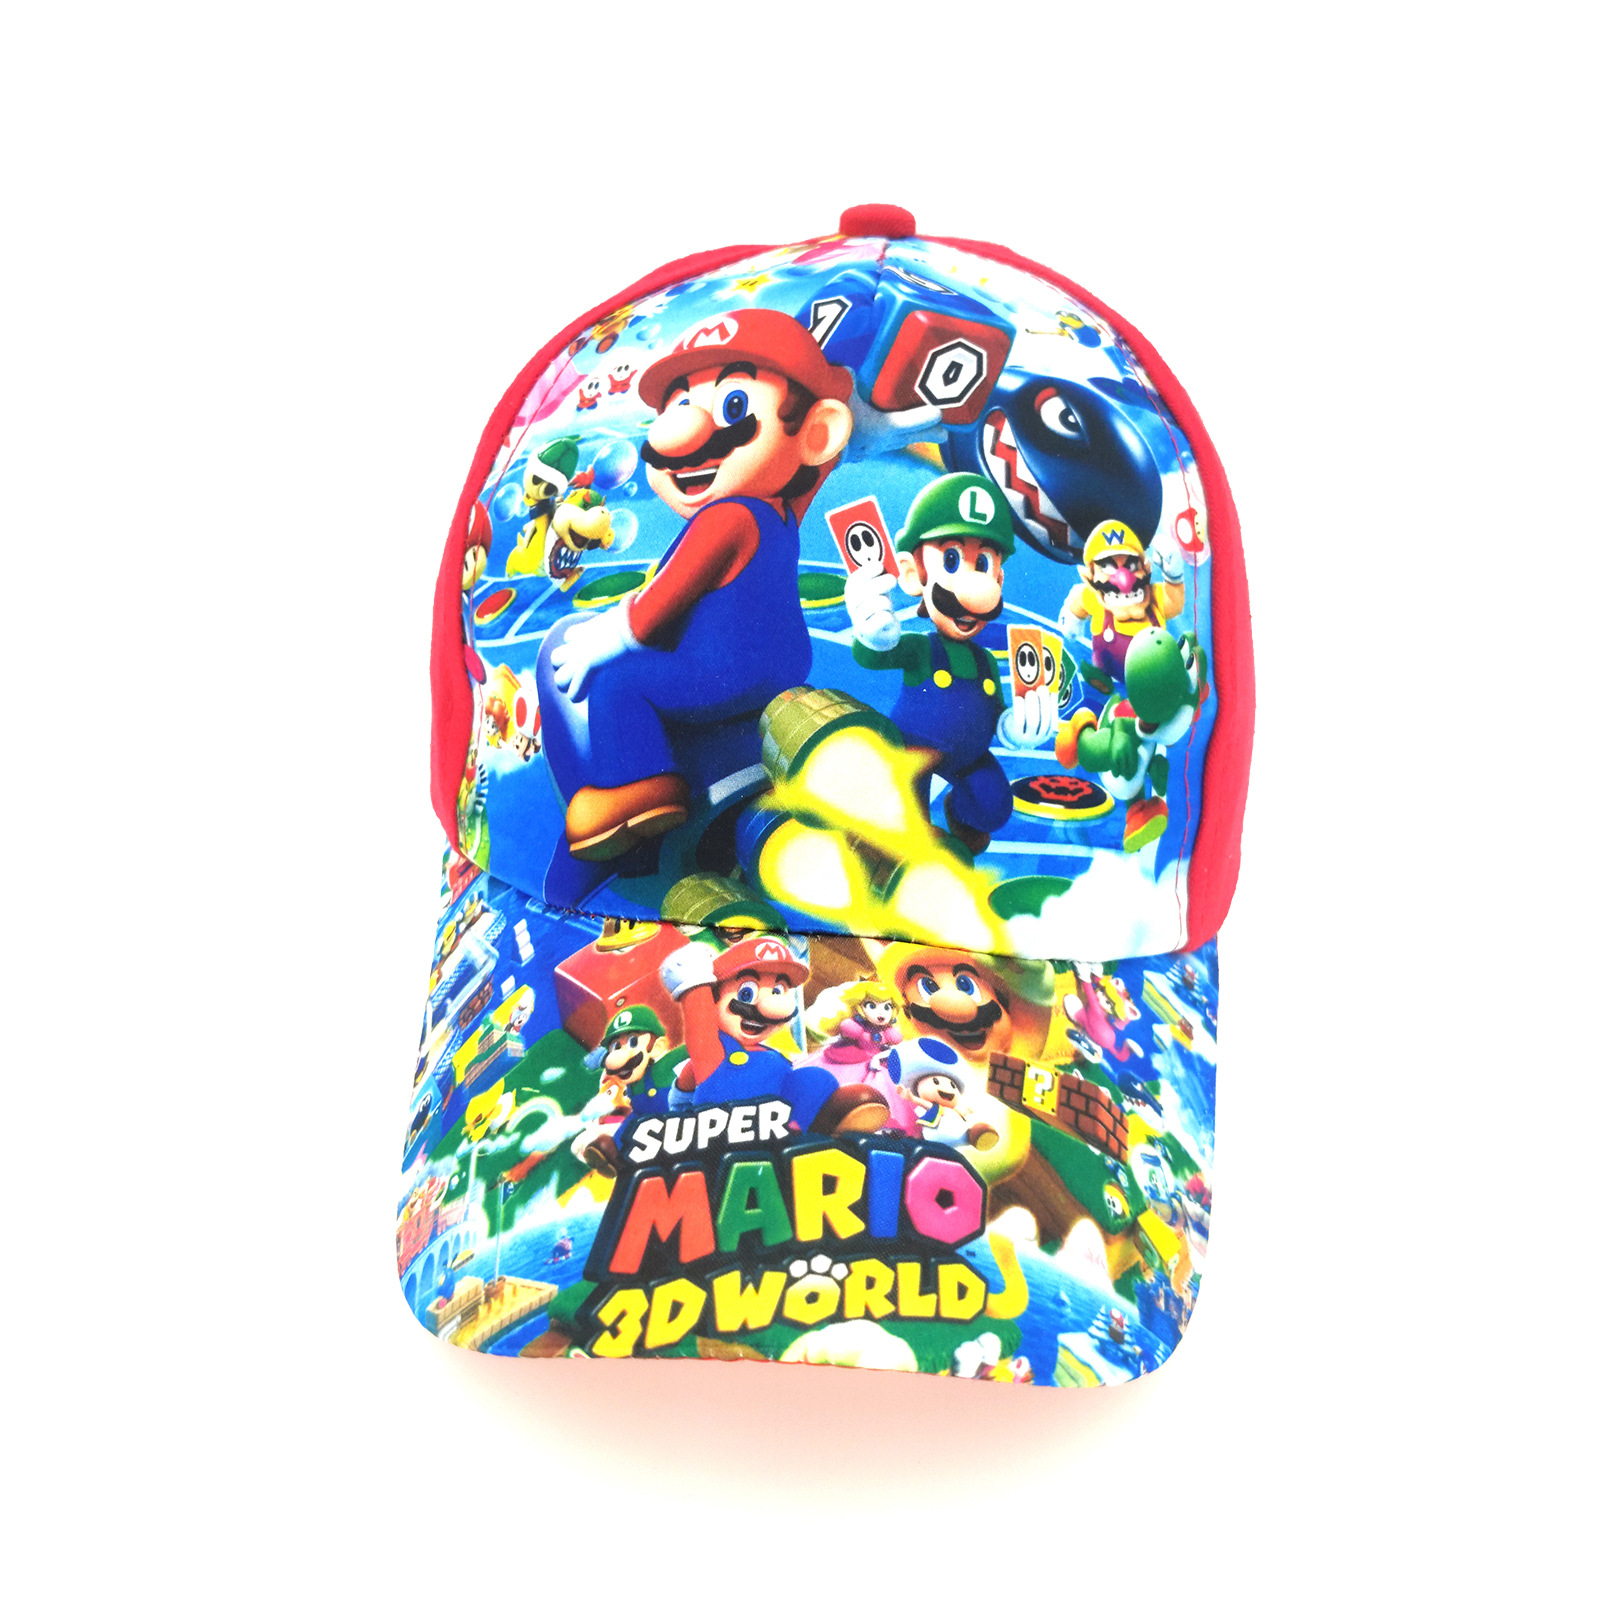 Super Mary Mario Cartoon Hat Children's Travel Sun-Proof Baseball Cap Mario Bros Peaked Cap